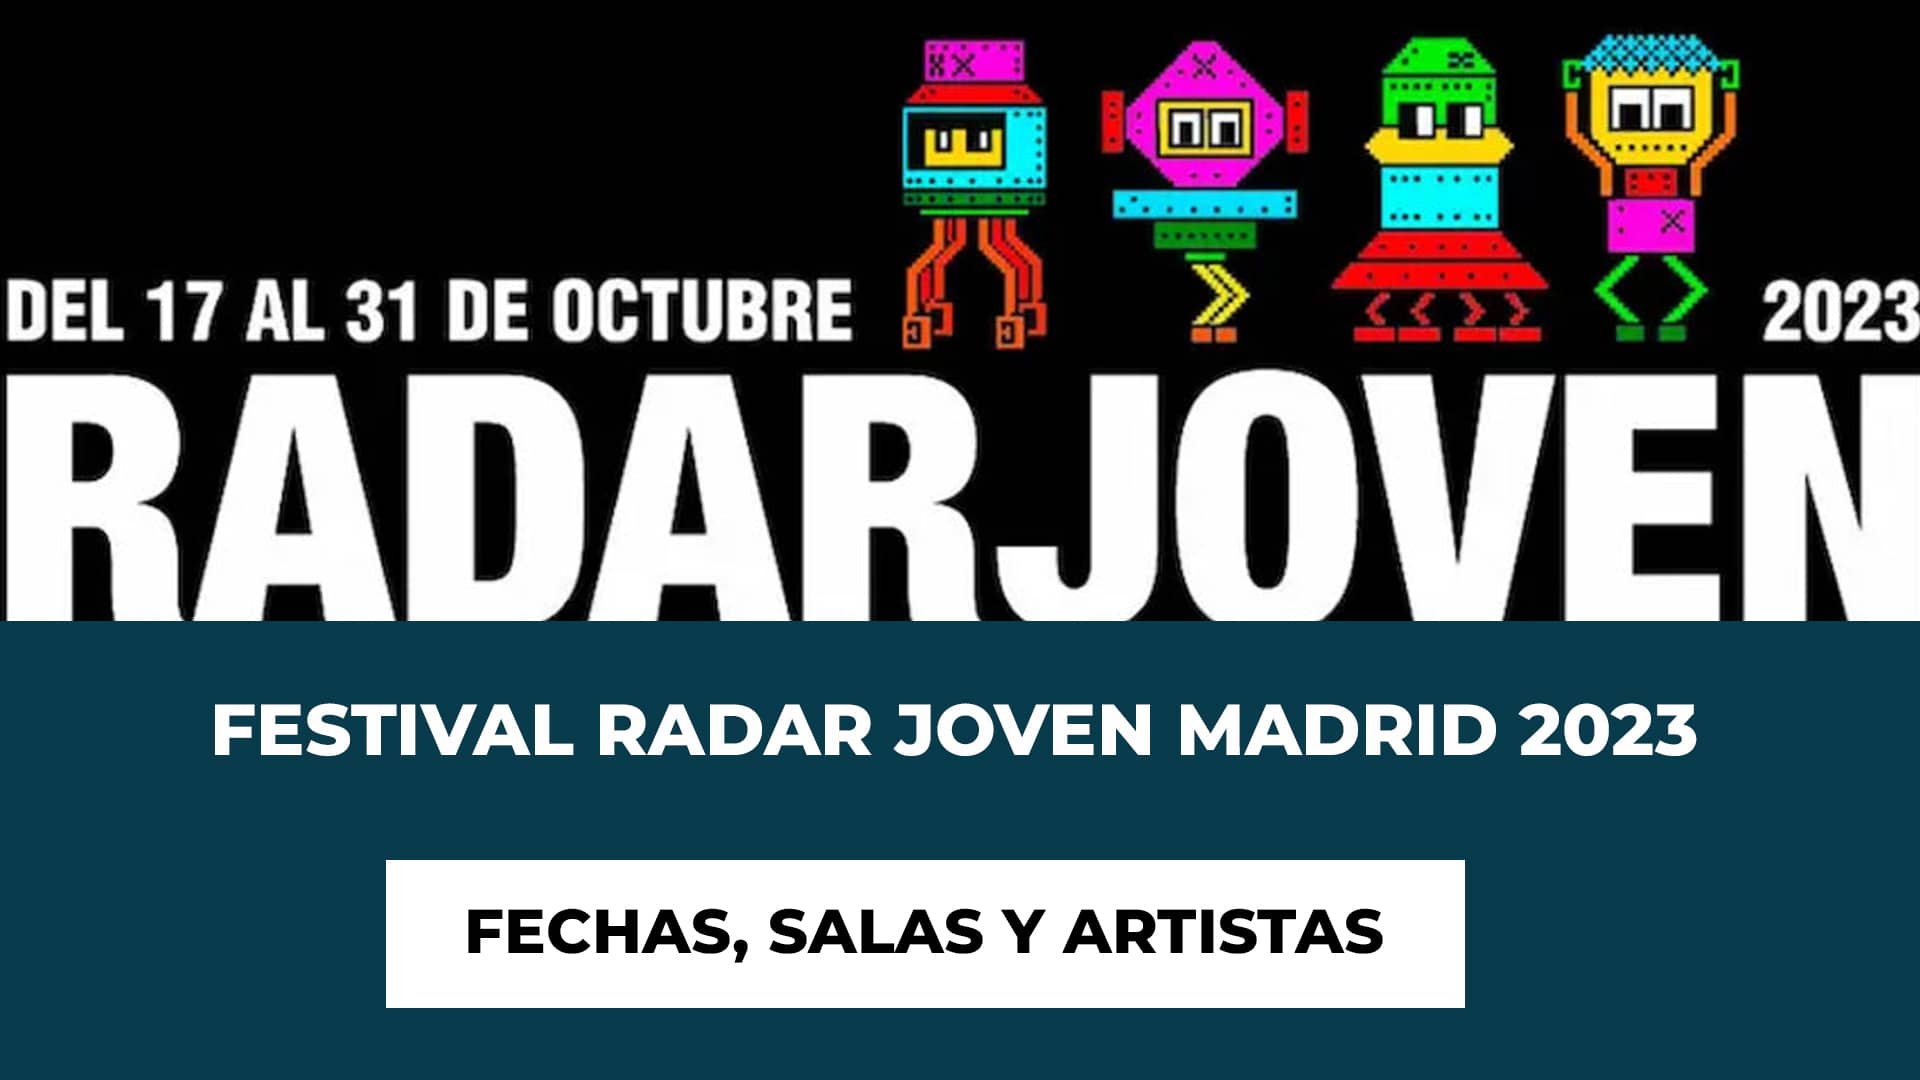 Festival Radar Joven Madrid 2023 - Hablamos de las fechas, los conciertos, artistas y las salas por las que pasa este festival